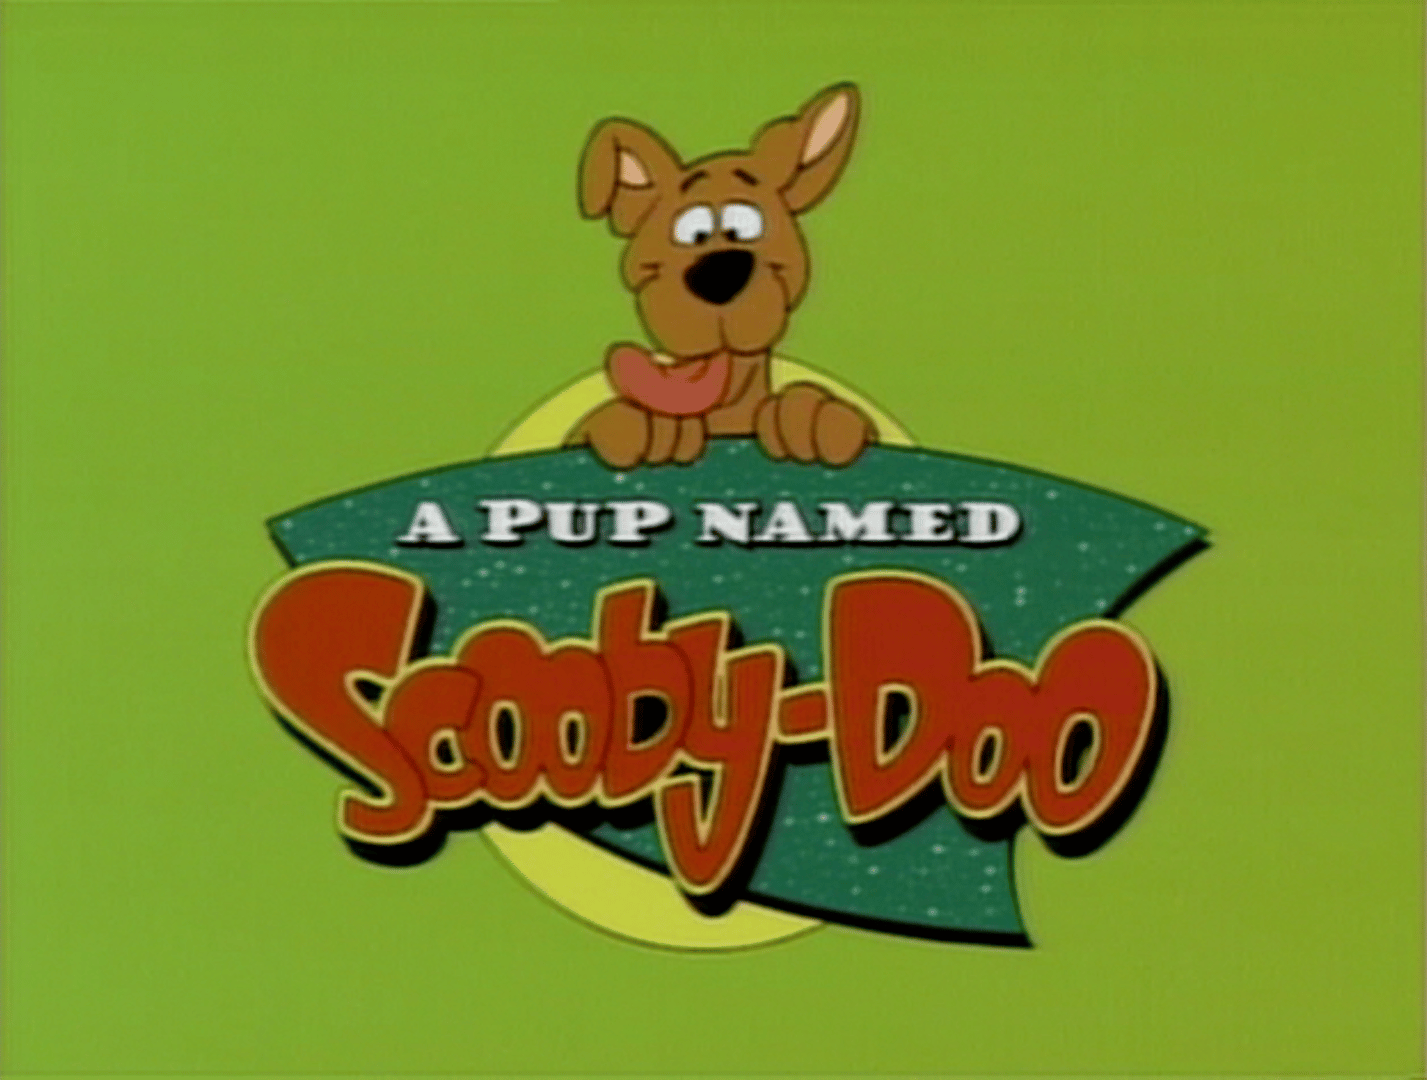 ‘A Pup Named Scooby Doo’ - photo courtesy of hanna-barbera